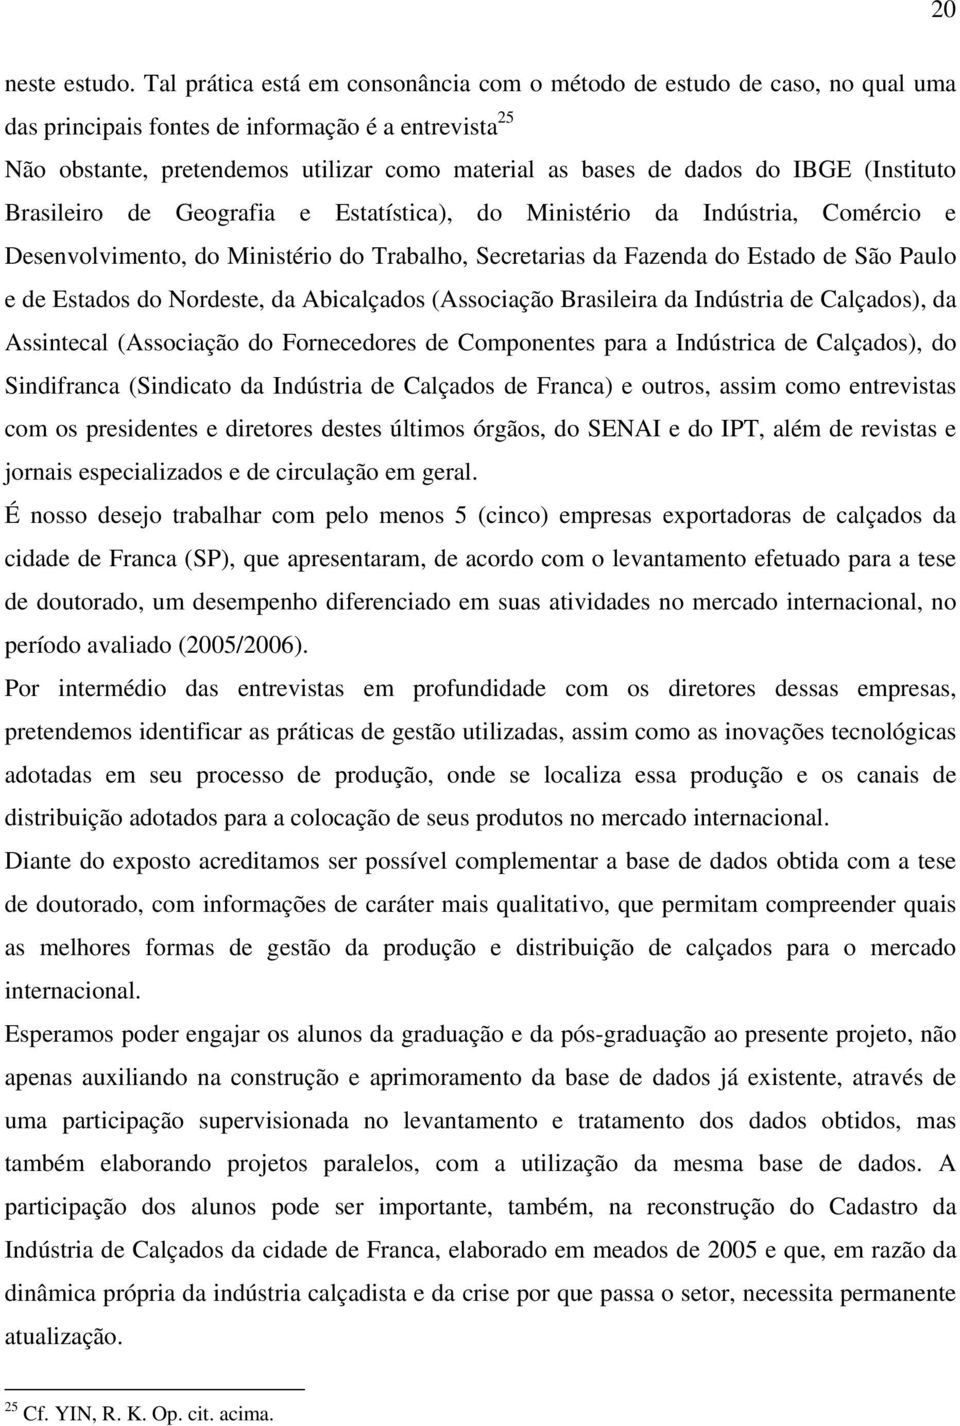 IBGE (Instituto Brasileiro de Geografia e Estatística), do Ministério da Indústria, Comércio e Desenvolvimento, do Ministério do Trabalho, Secretarias da Fazenda do Estado de São Paulo e de Estados